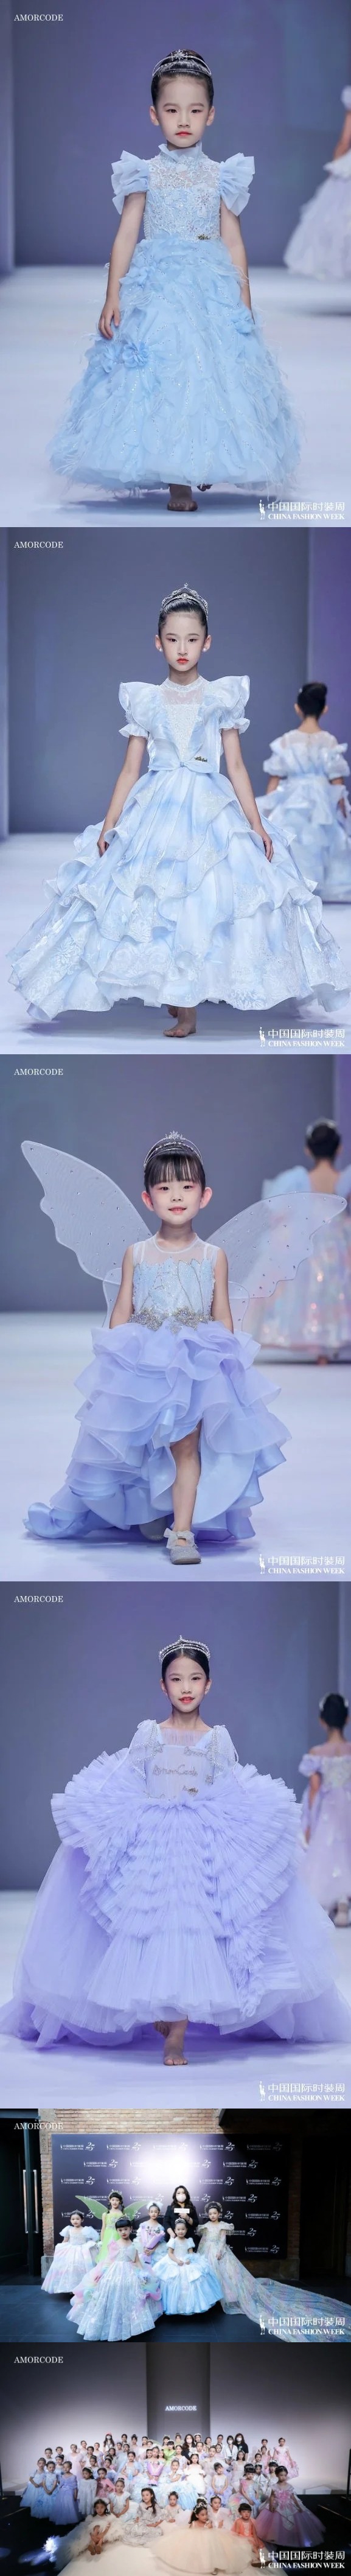 「公主日记 · 秘之-仙境」AMORCODE亮相SS23中国国际时装周